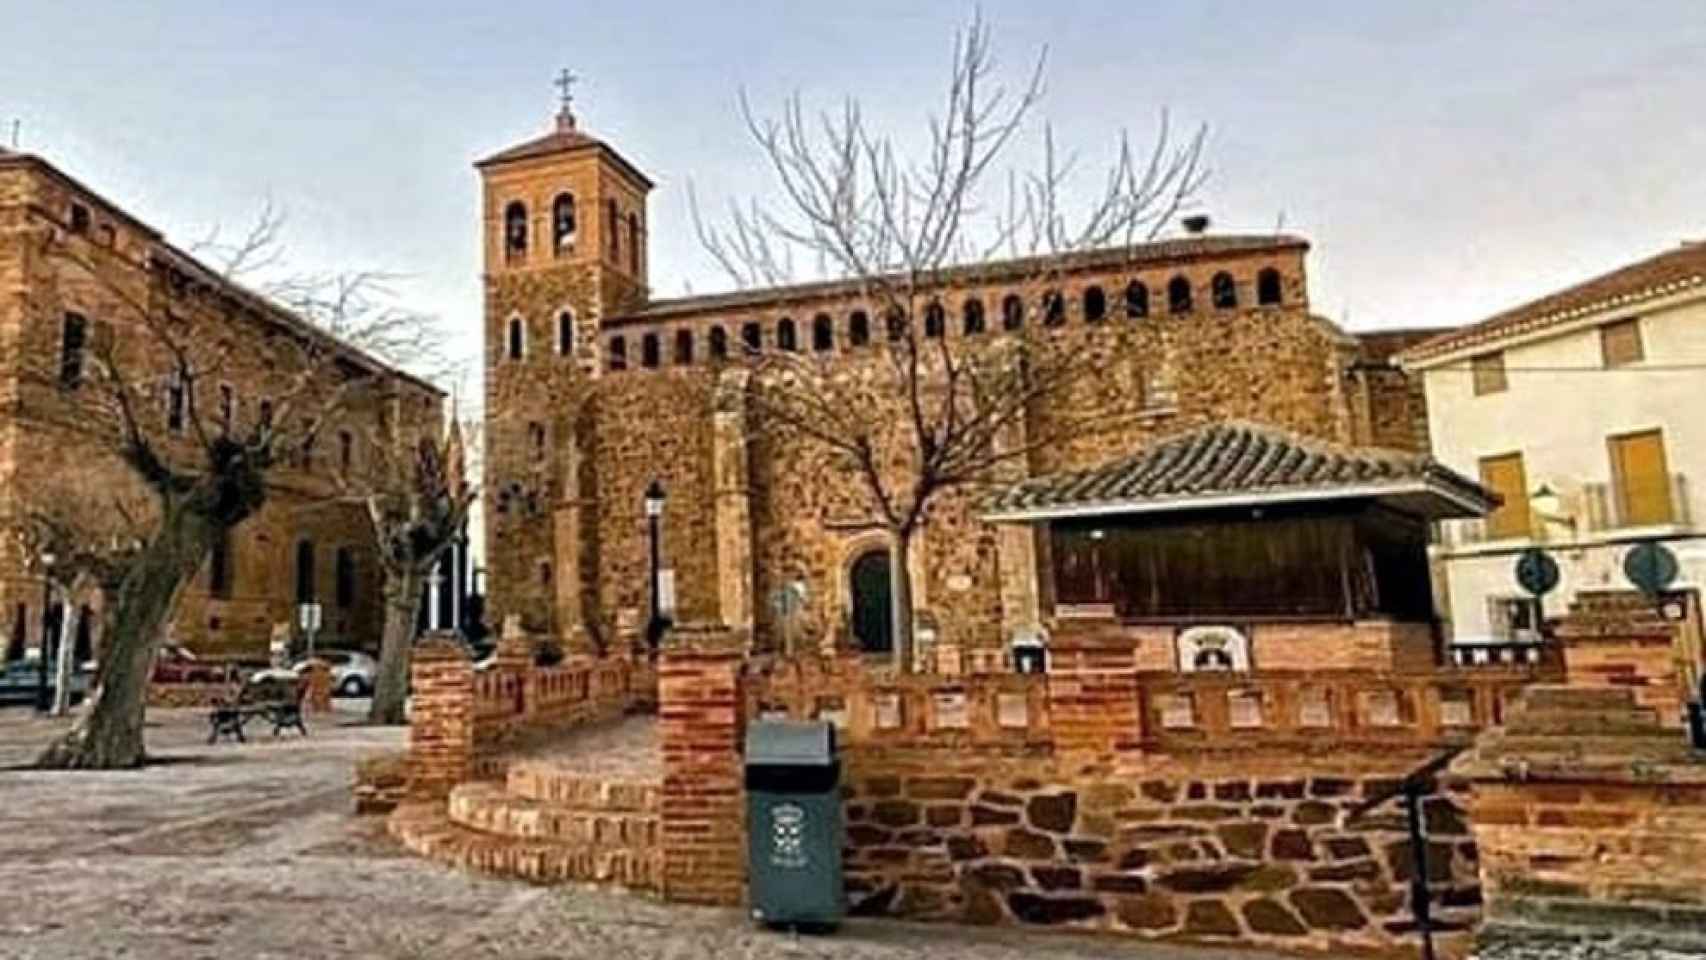 Iglesia de Nuestra Señora de la Asunción de Viso del Marqués (Ciudad Real).